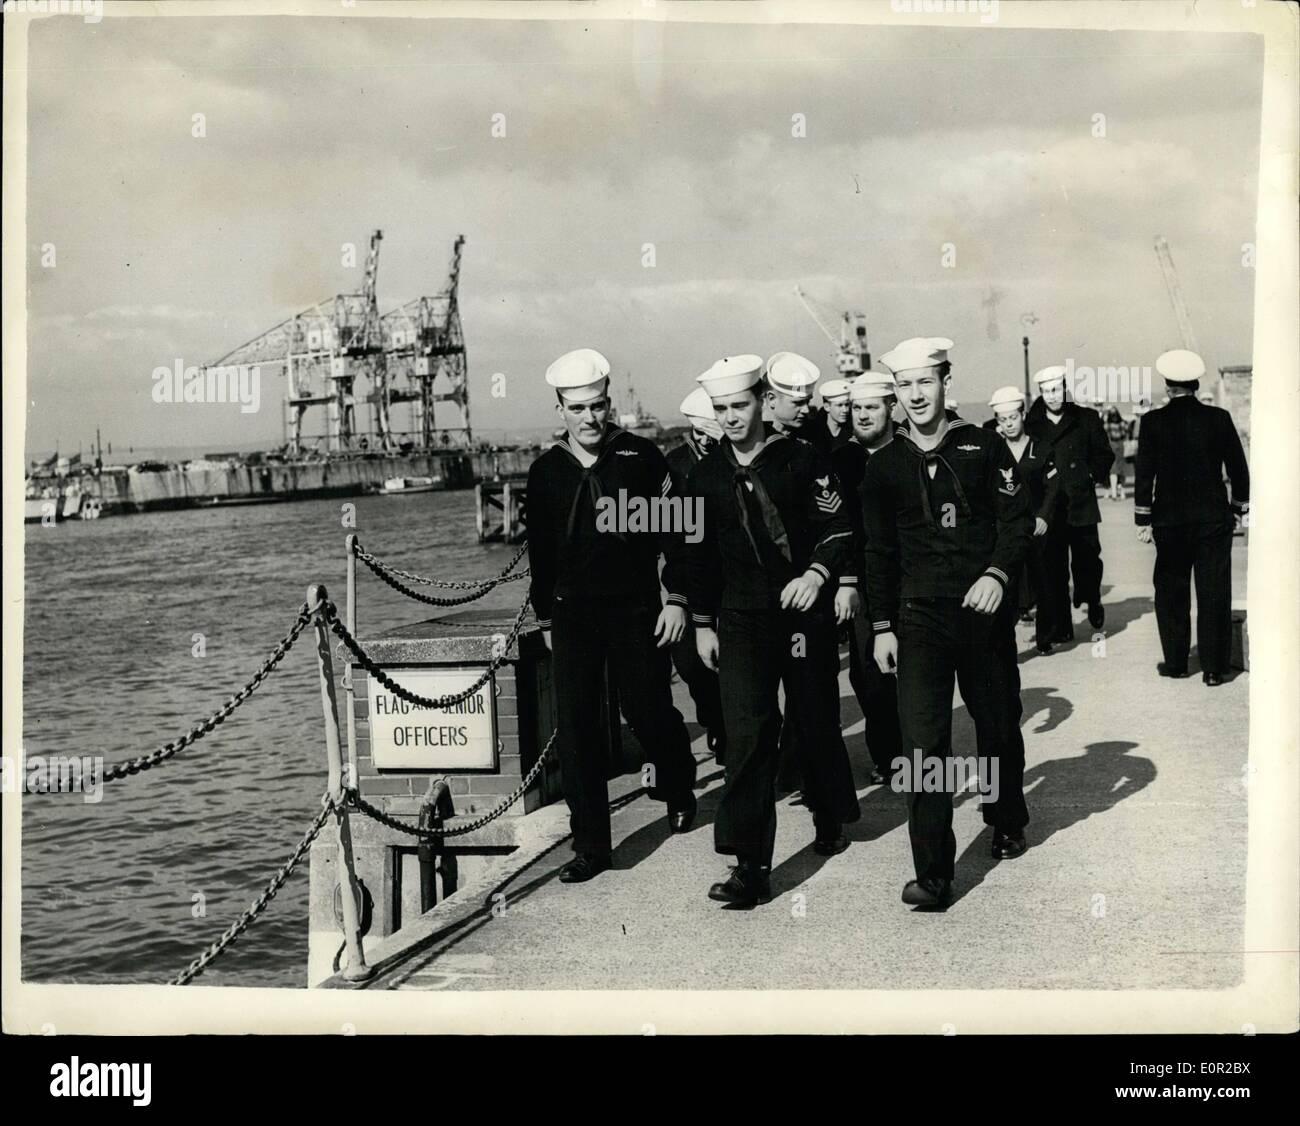 10. Okt. 1957 - das Atom U-Boot segelt ein - nach 14 Tagen unter dem Ozean.: Ein Weltrekord-U-Boot-Tauchgang von 14 Tagen 3 12 Stunden wurde für das Atom-betriebene U-Boot Nautilus der US-Marine von ihrem Kommandanten, dem 36-jährigen Commander William R. Anderson, beansprucht, als er das U-Boot gestern in Portland, Dorset, brachte. Es war der erste offizielle Besuch der Nautilus in einem ausländischen Hafen. Während ihres langen Zaubers unter Wasser reiste Nautilus 5,000 Meilen mit mehr als 15 Knoten ohne einmal aufzutauchen oder 'schnorcheln' zu müssen. Stockfoto